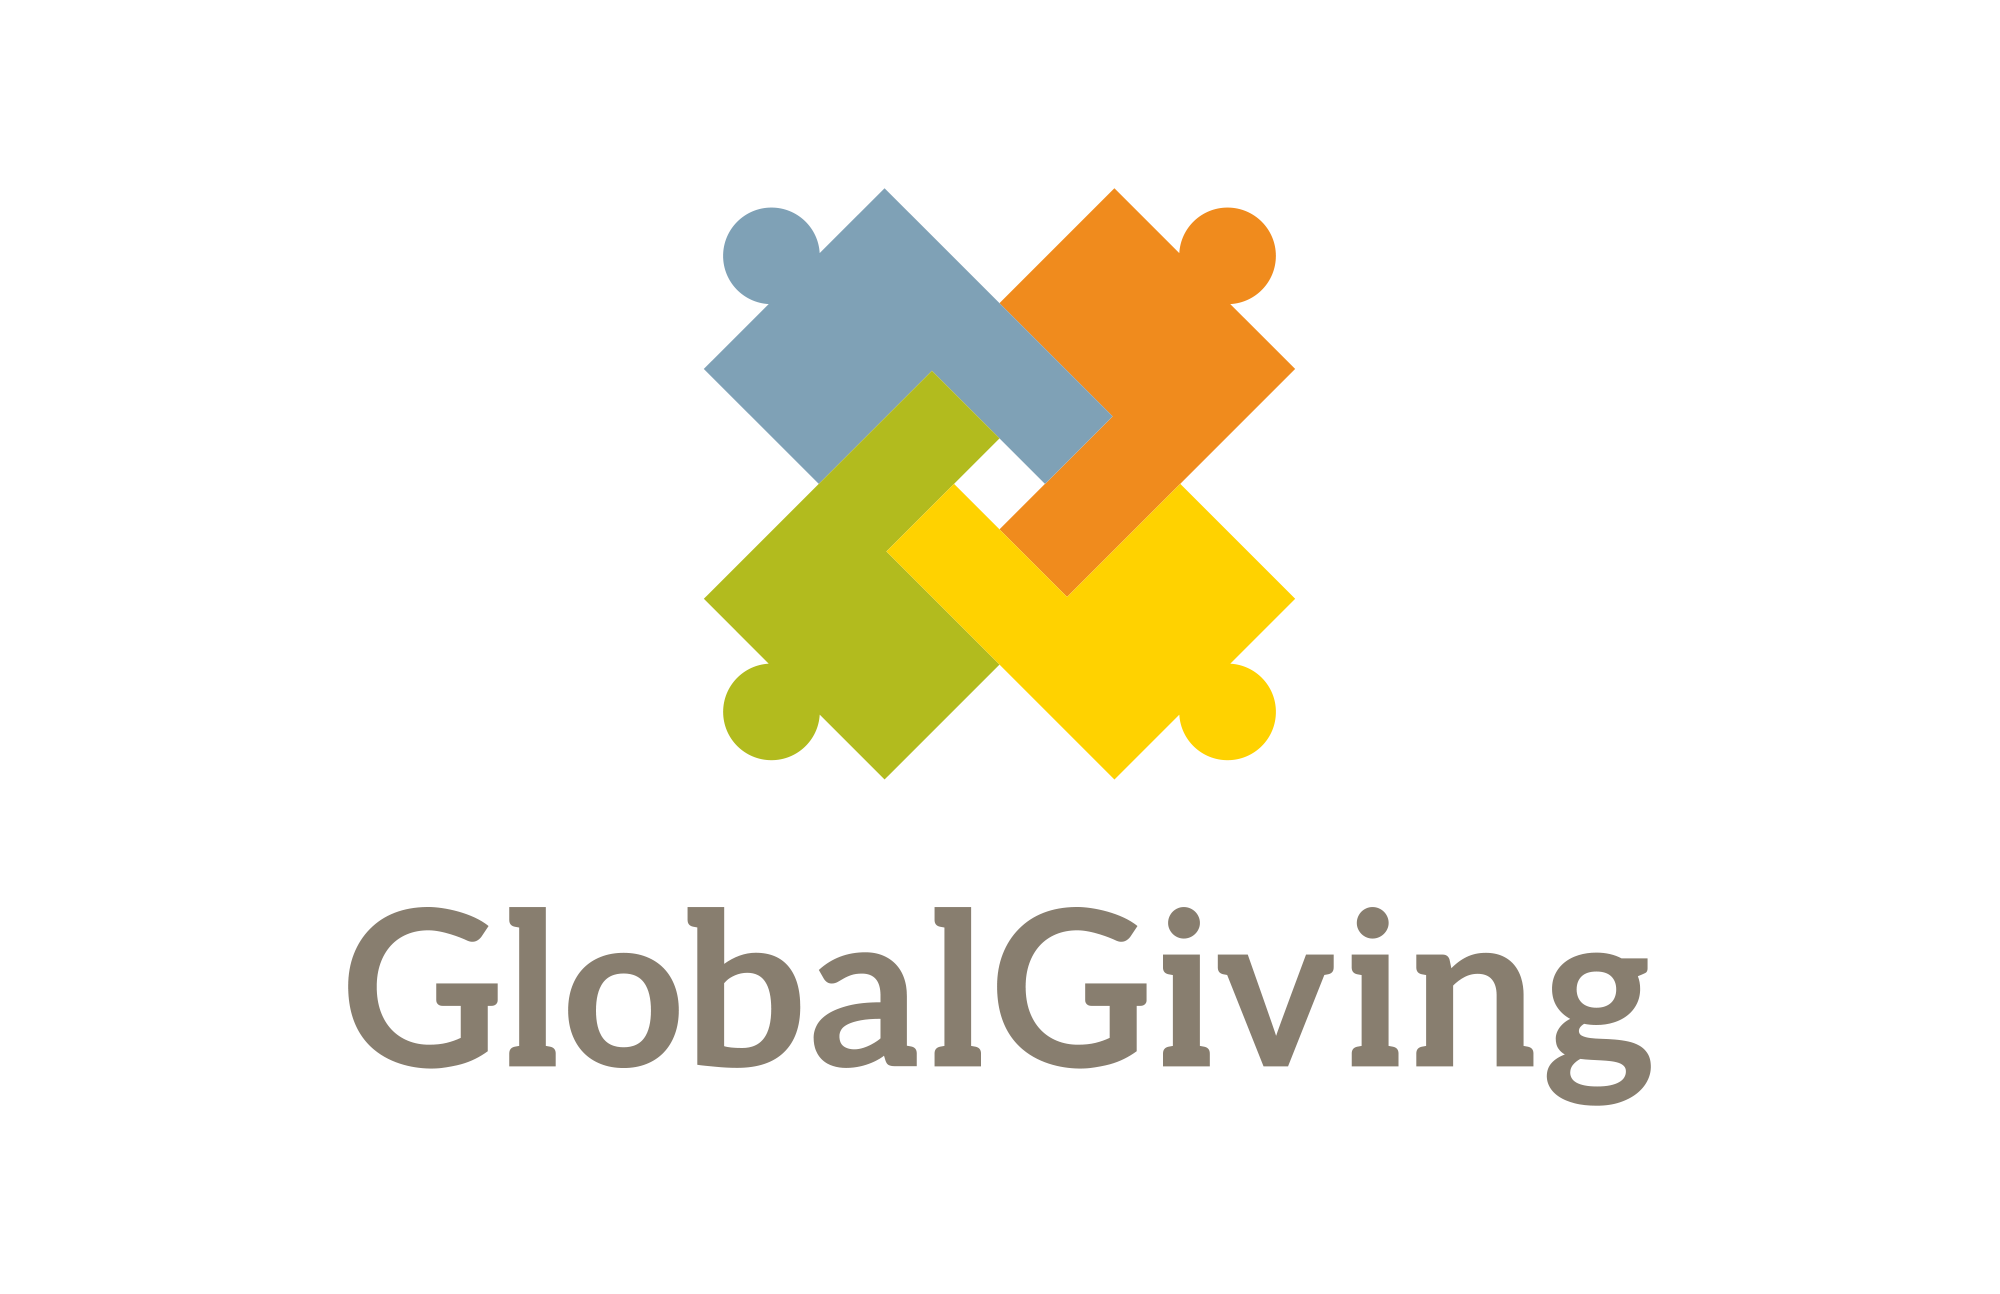 Globalgiving logo, logotype